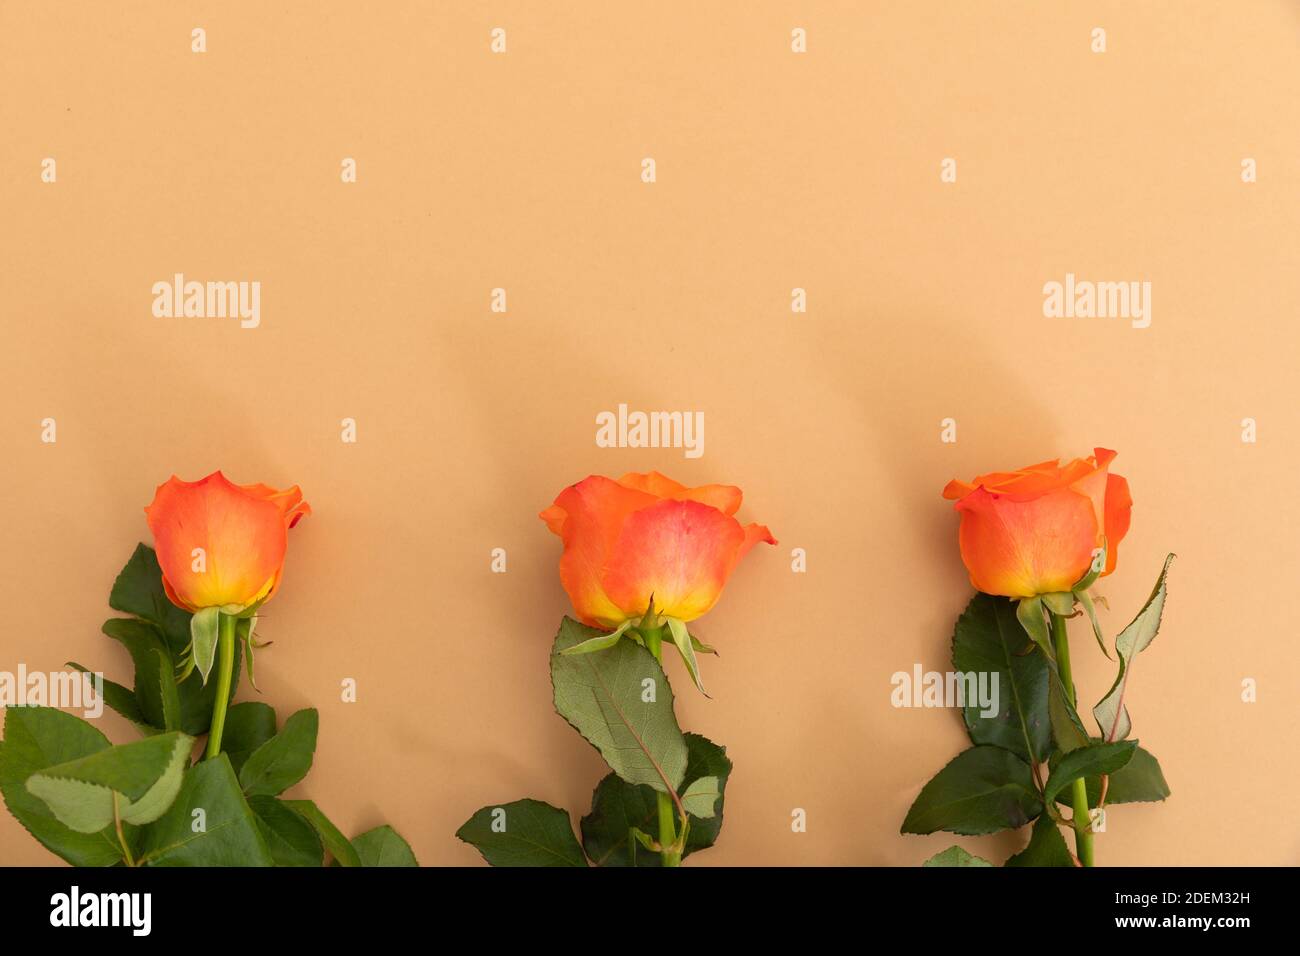 Tres rosas anaranjadas que yacen por separado del fondo sobre fondo anaranjado Foto de stock